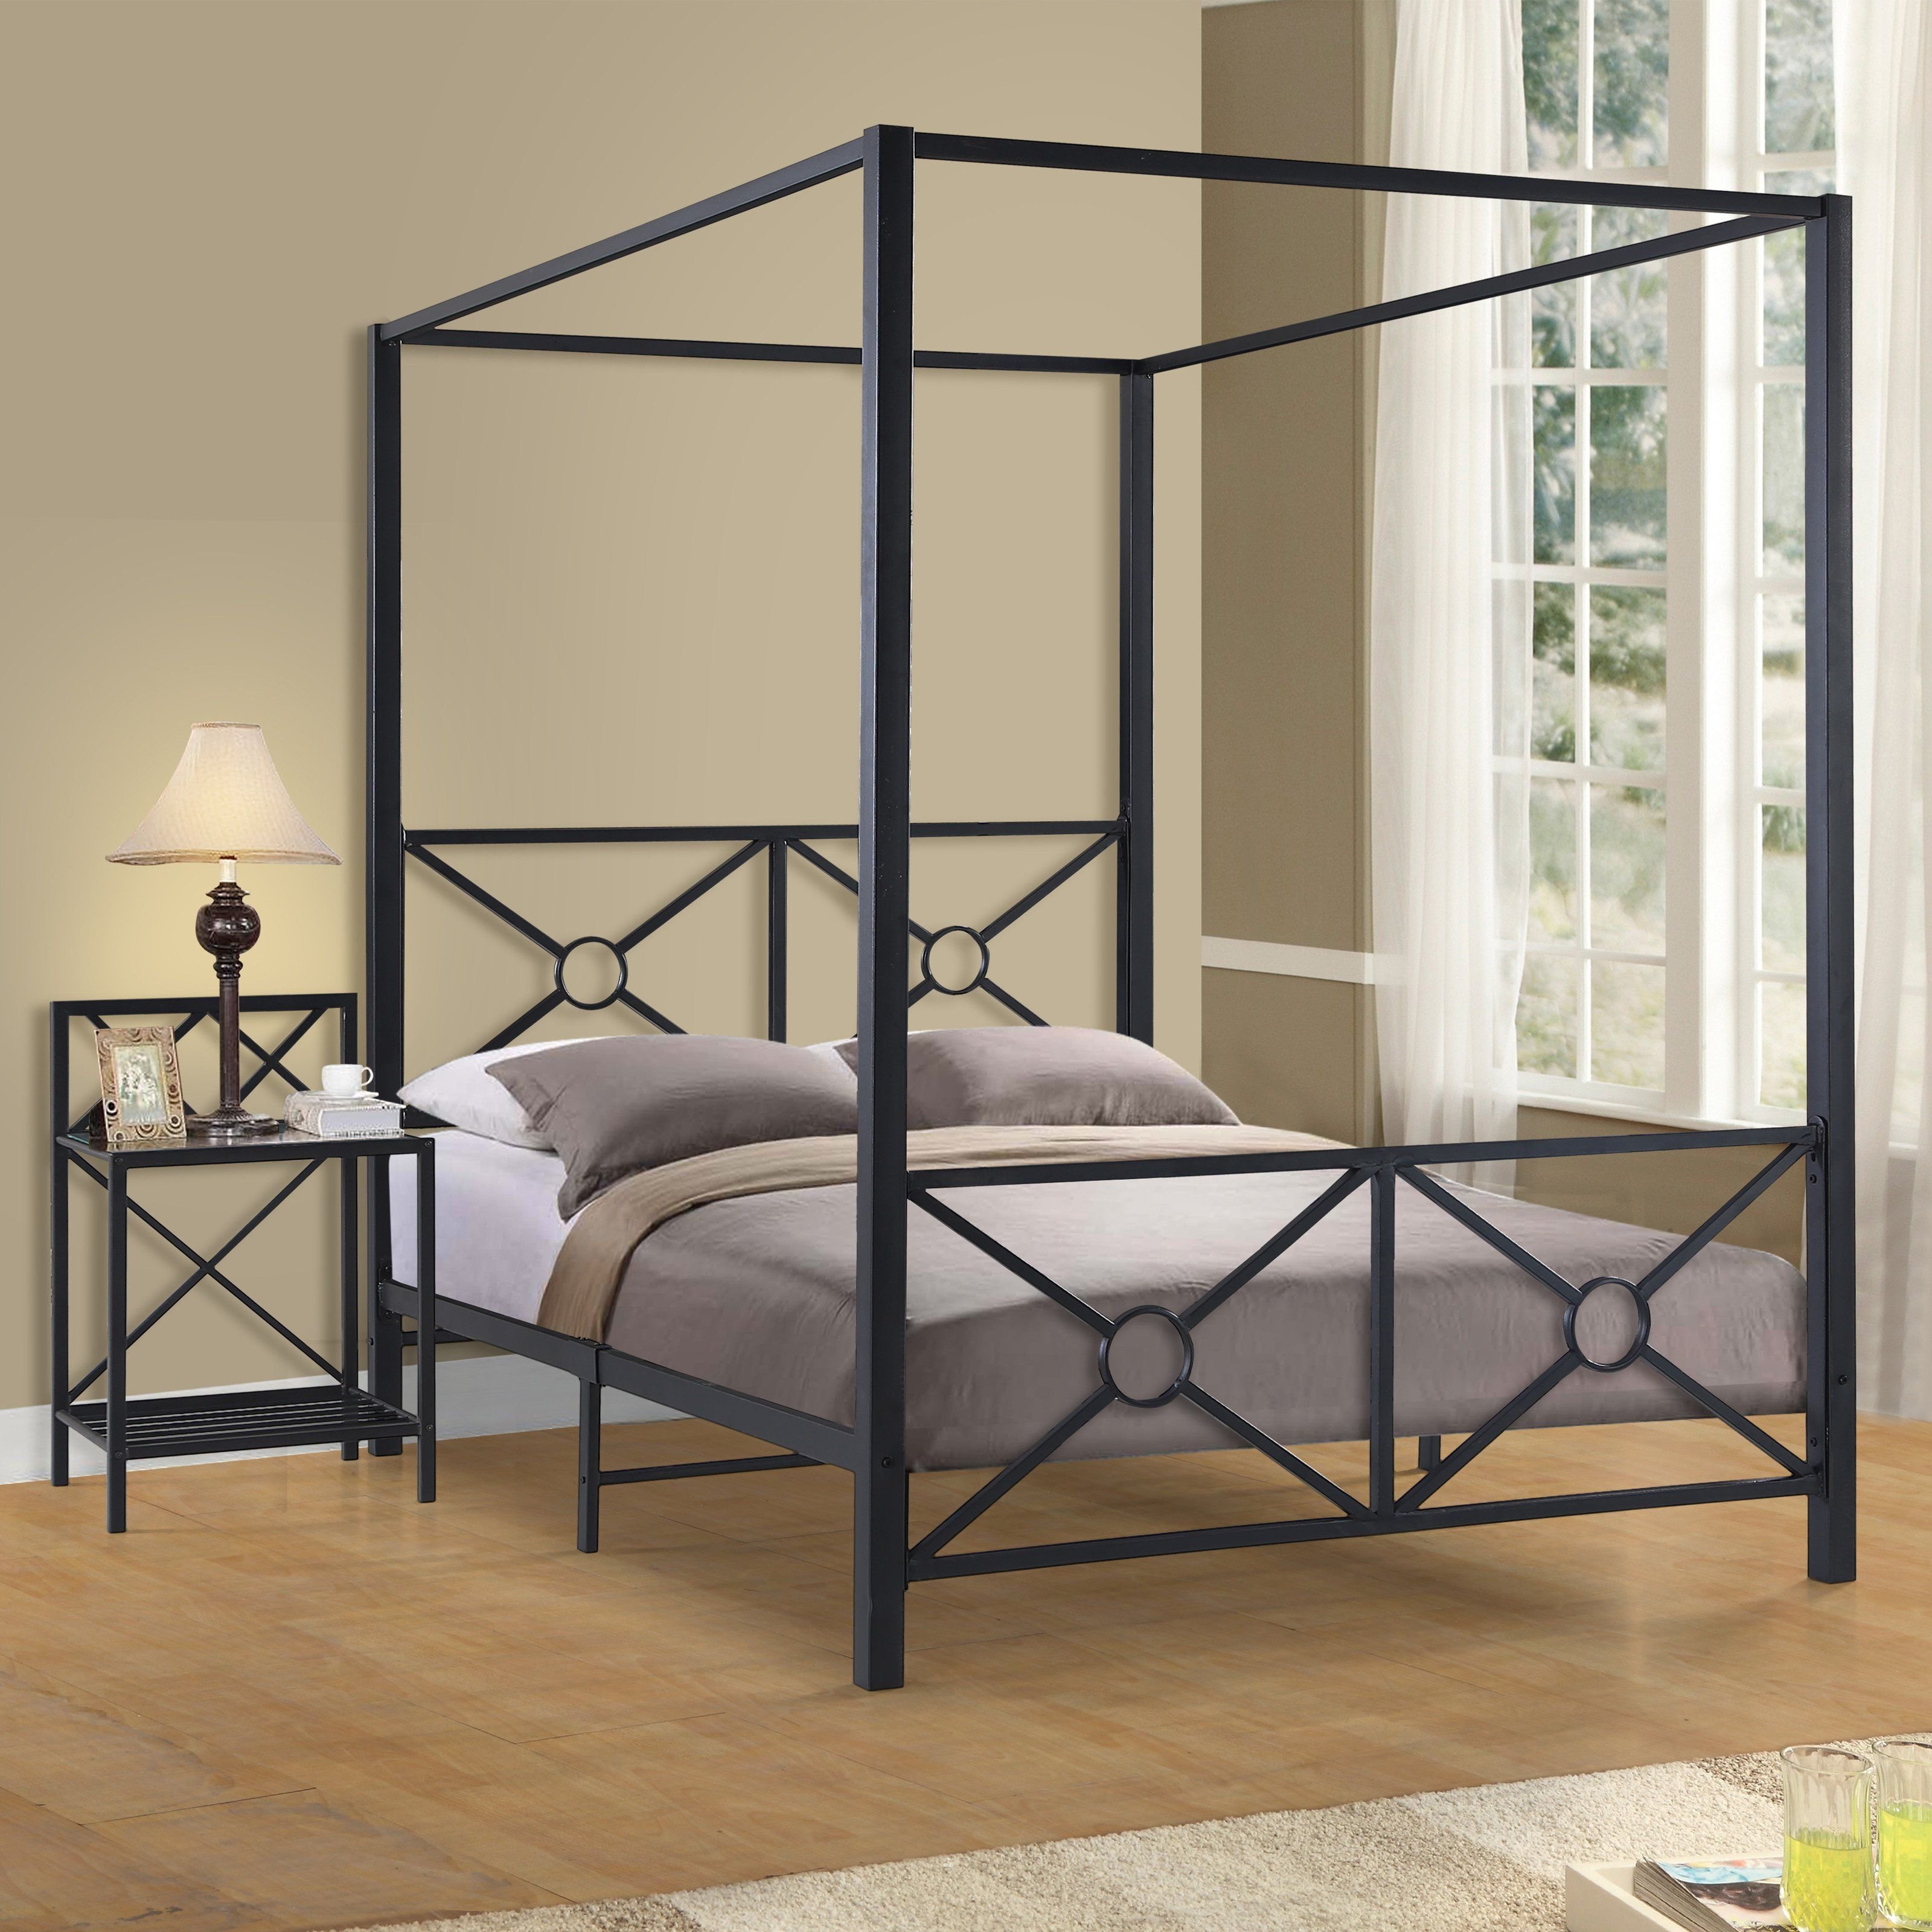 Сборка металлической кровати. Железная кровать. Кровать из металла. Кровать из металла и дерева. Кровать двуспальная из металла.